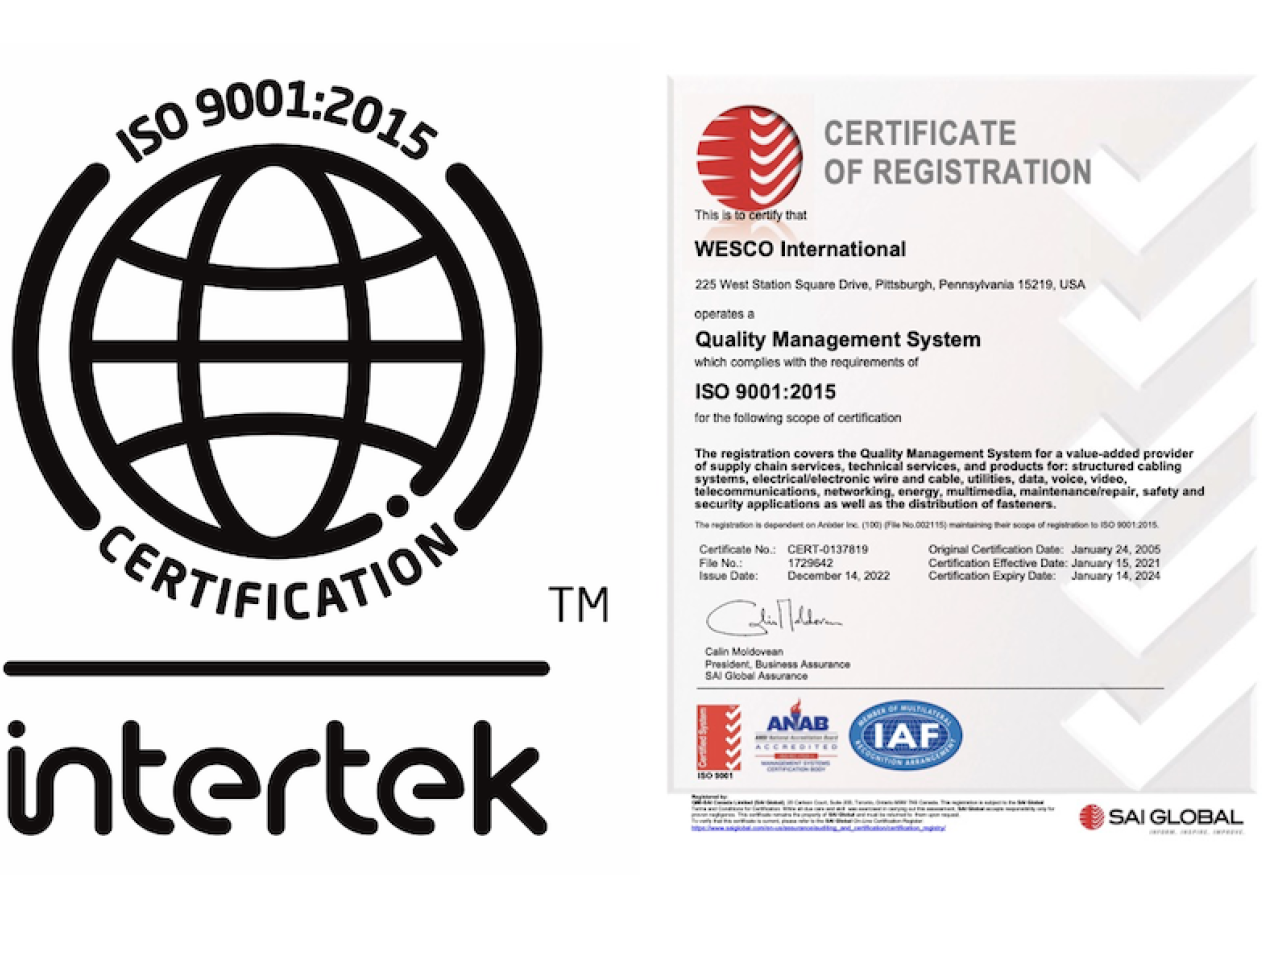 Wesco Intertek 9001:2015 Certificate.